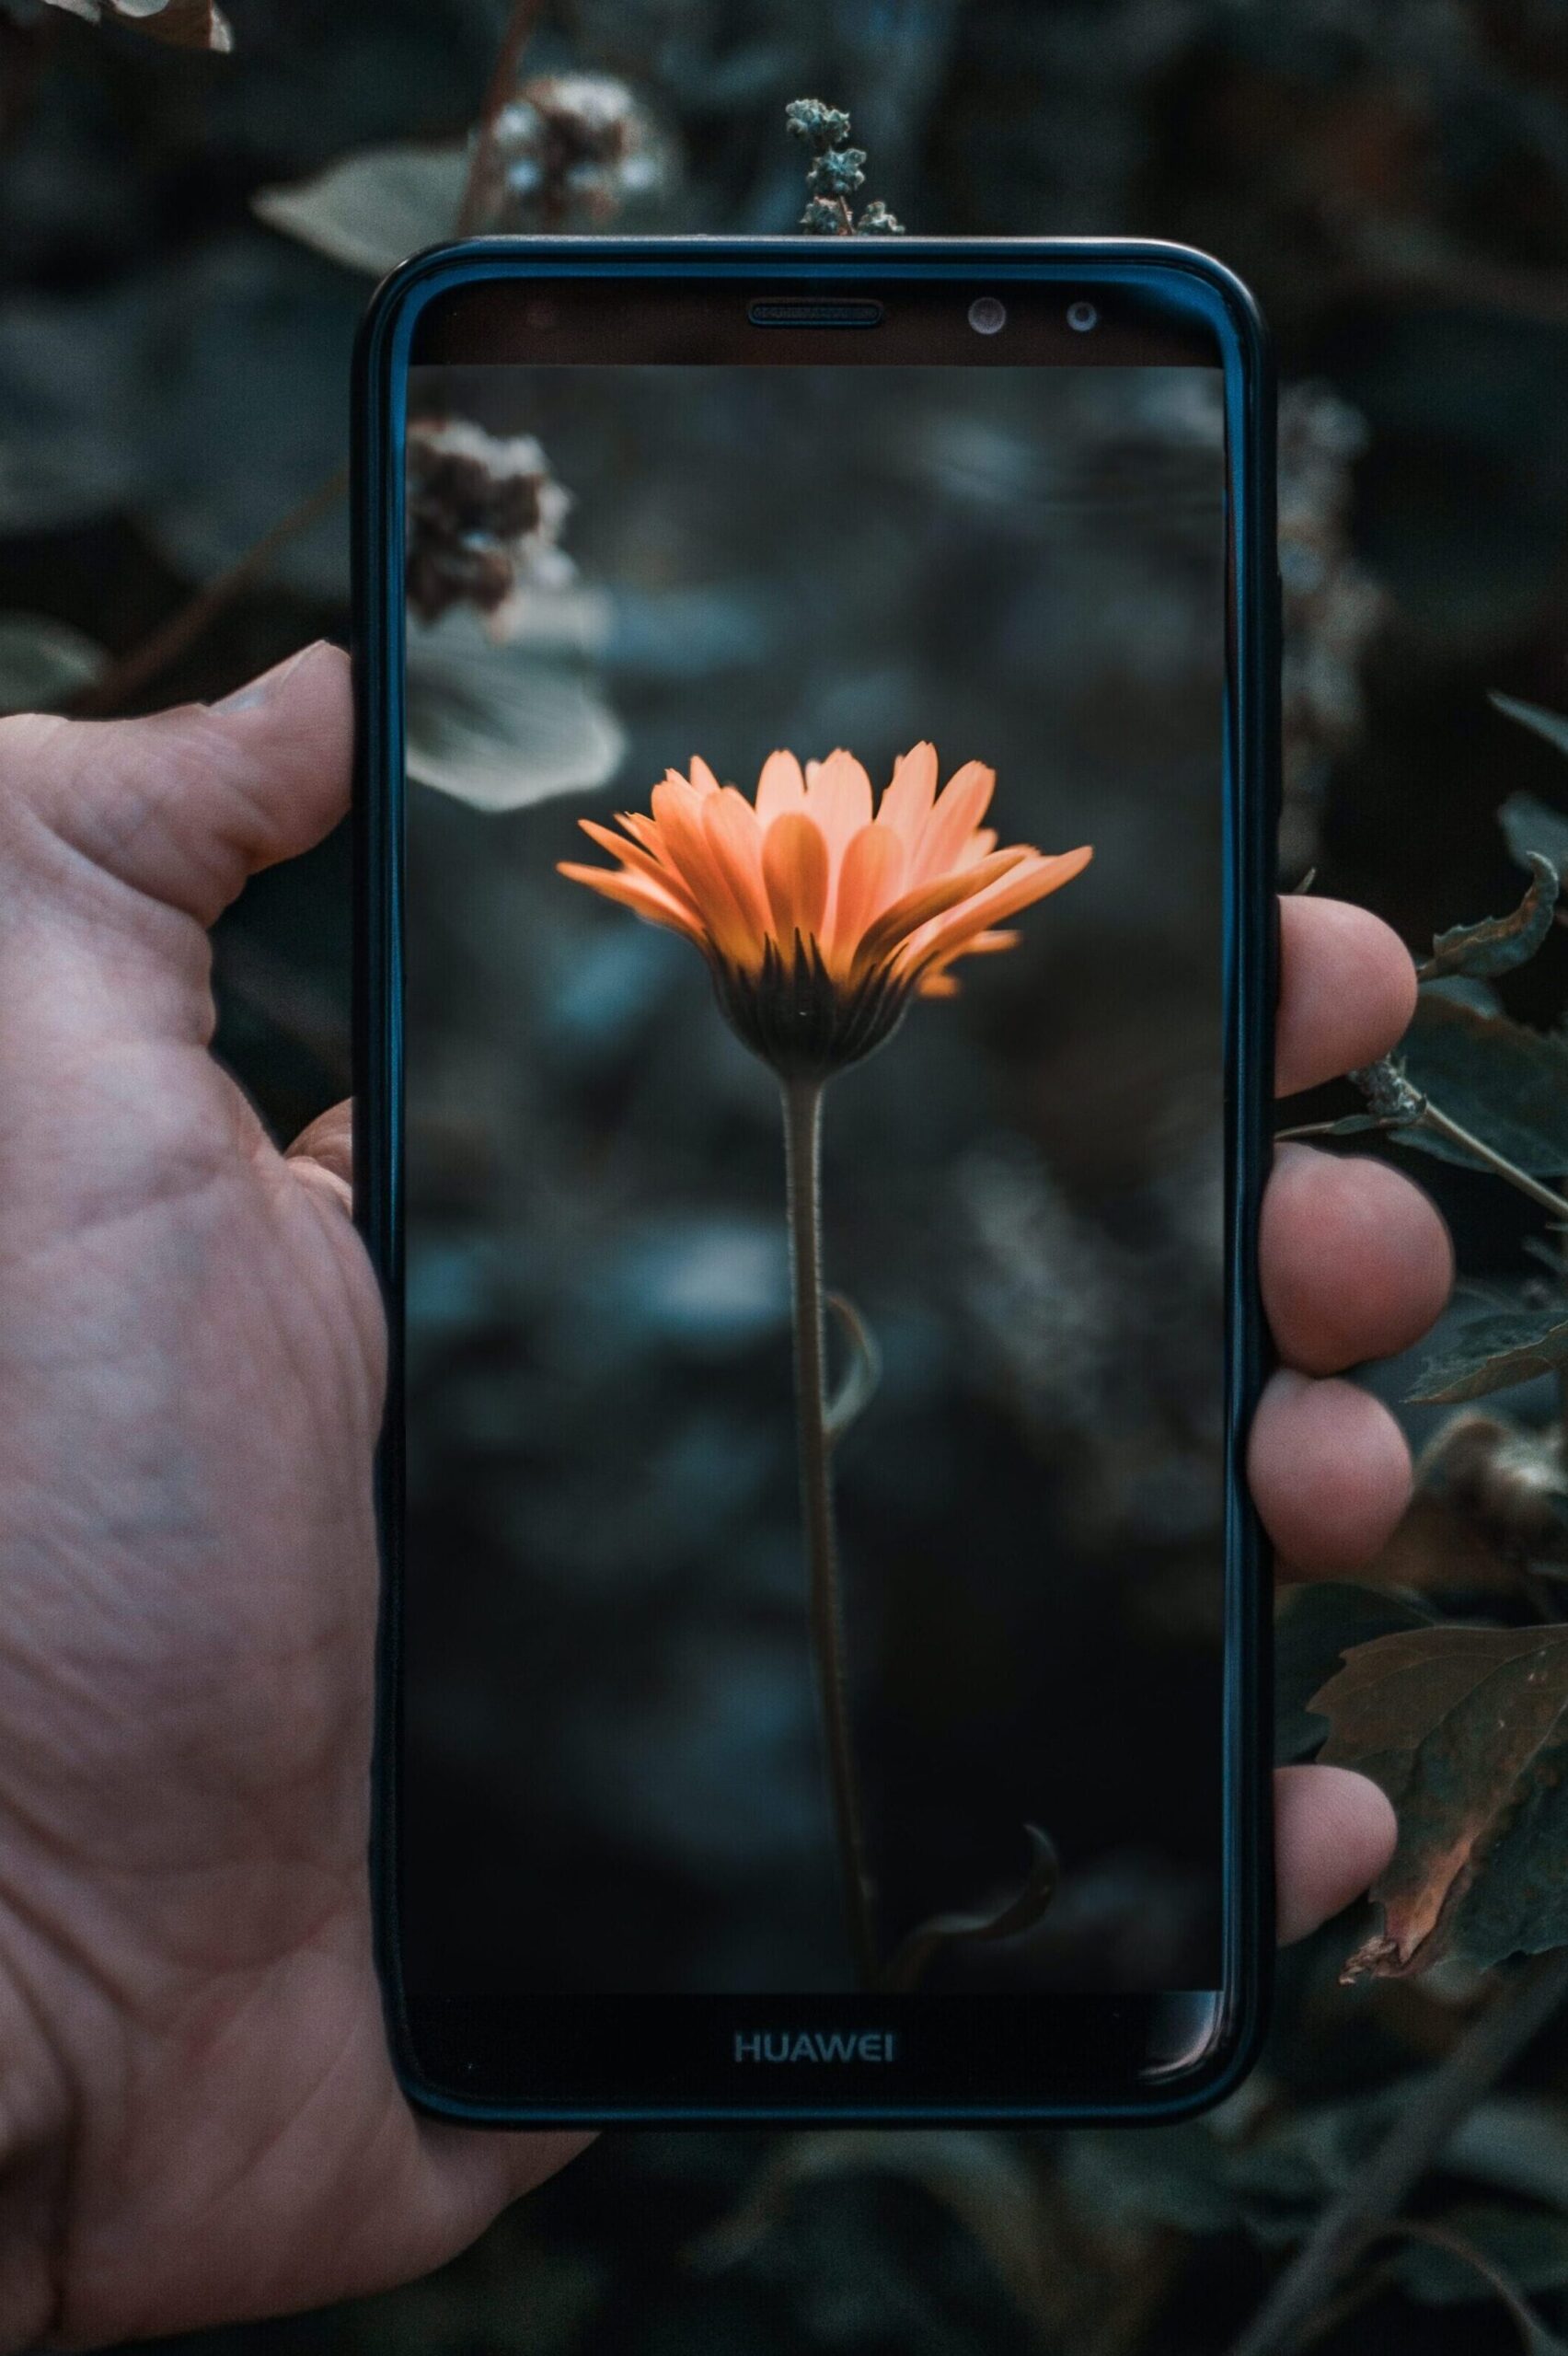 Flower on phone